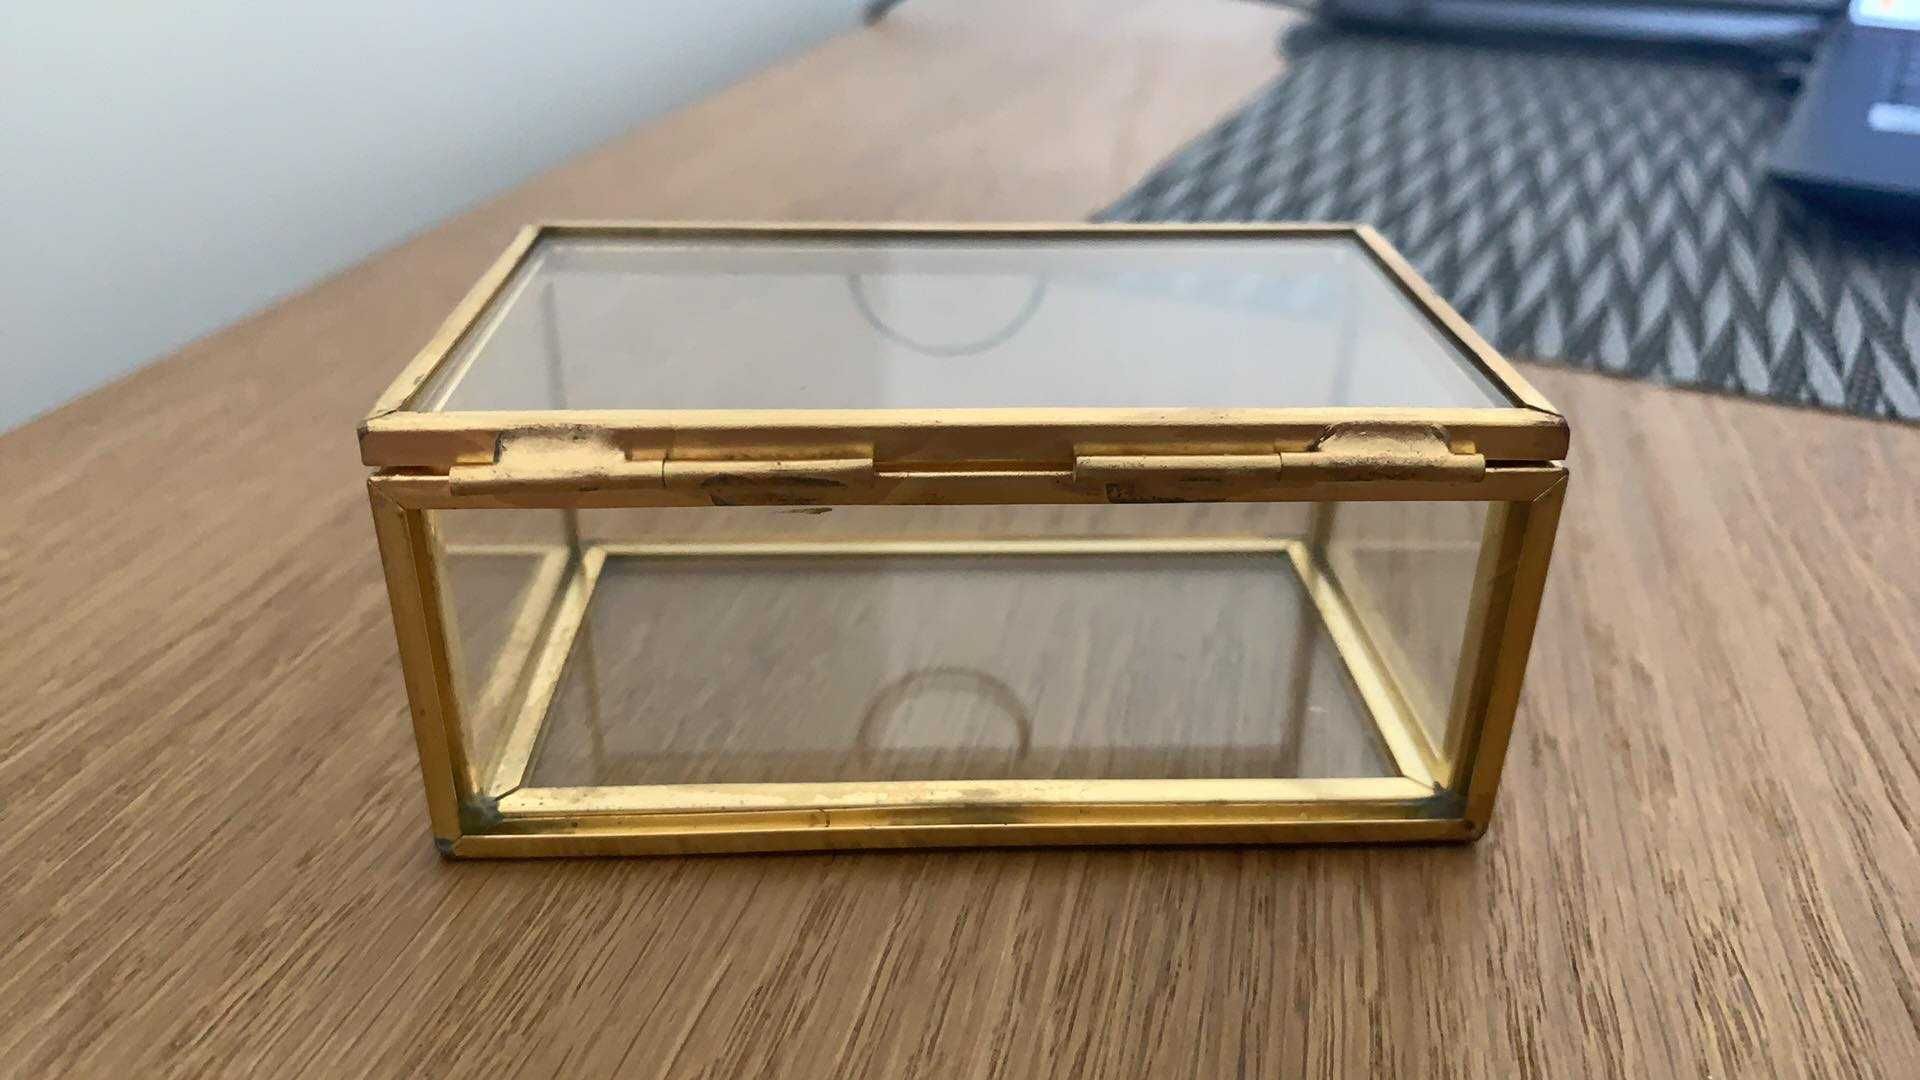 Szklane pudełko na obrączki Nowe